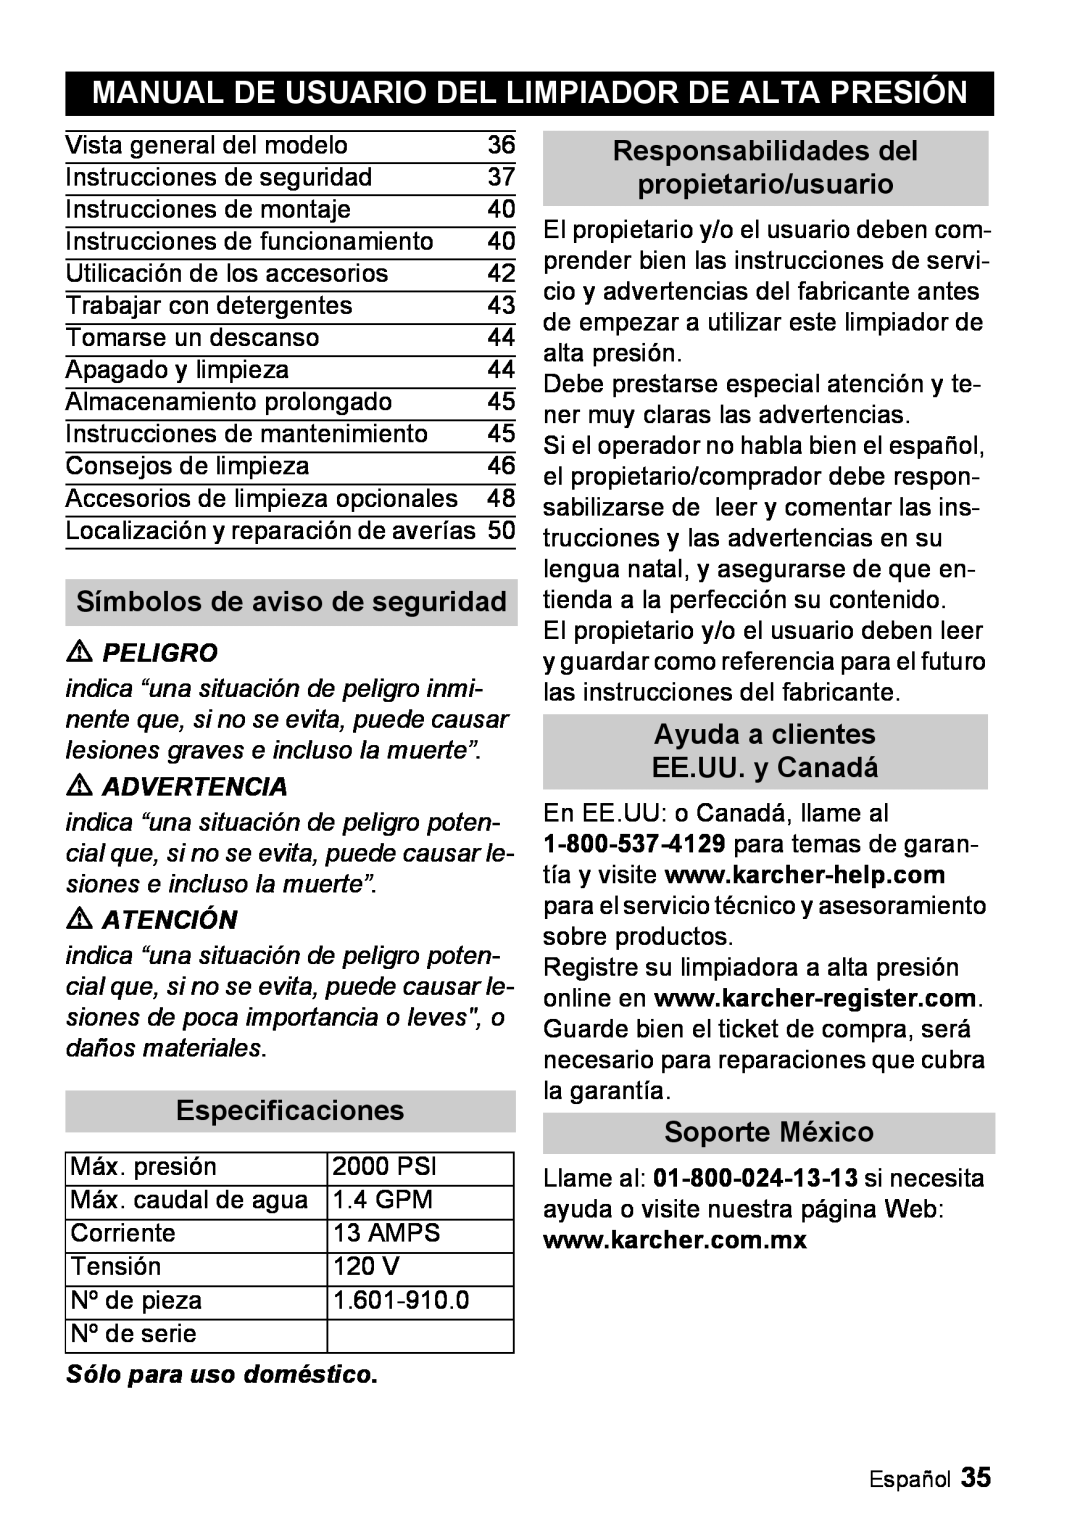 Karcher K 5.68 M Manual De Usuario Del Limpiador De Alta Presión, Responsabilidades del, propietario/usuario, Peligro 